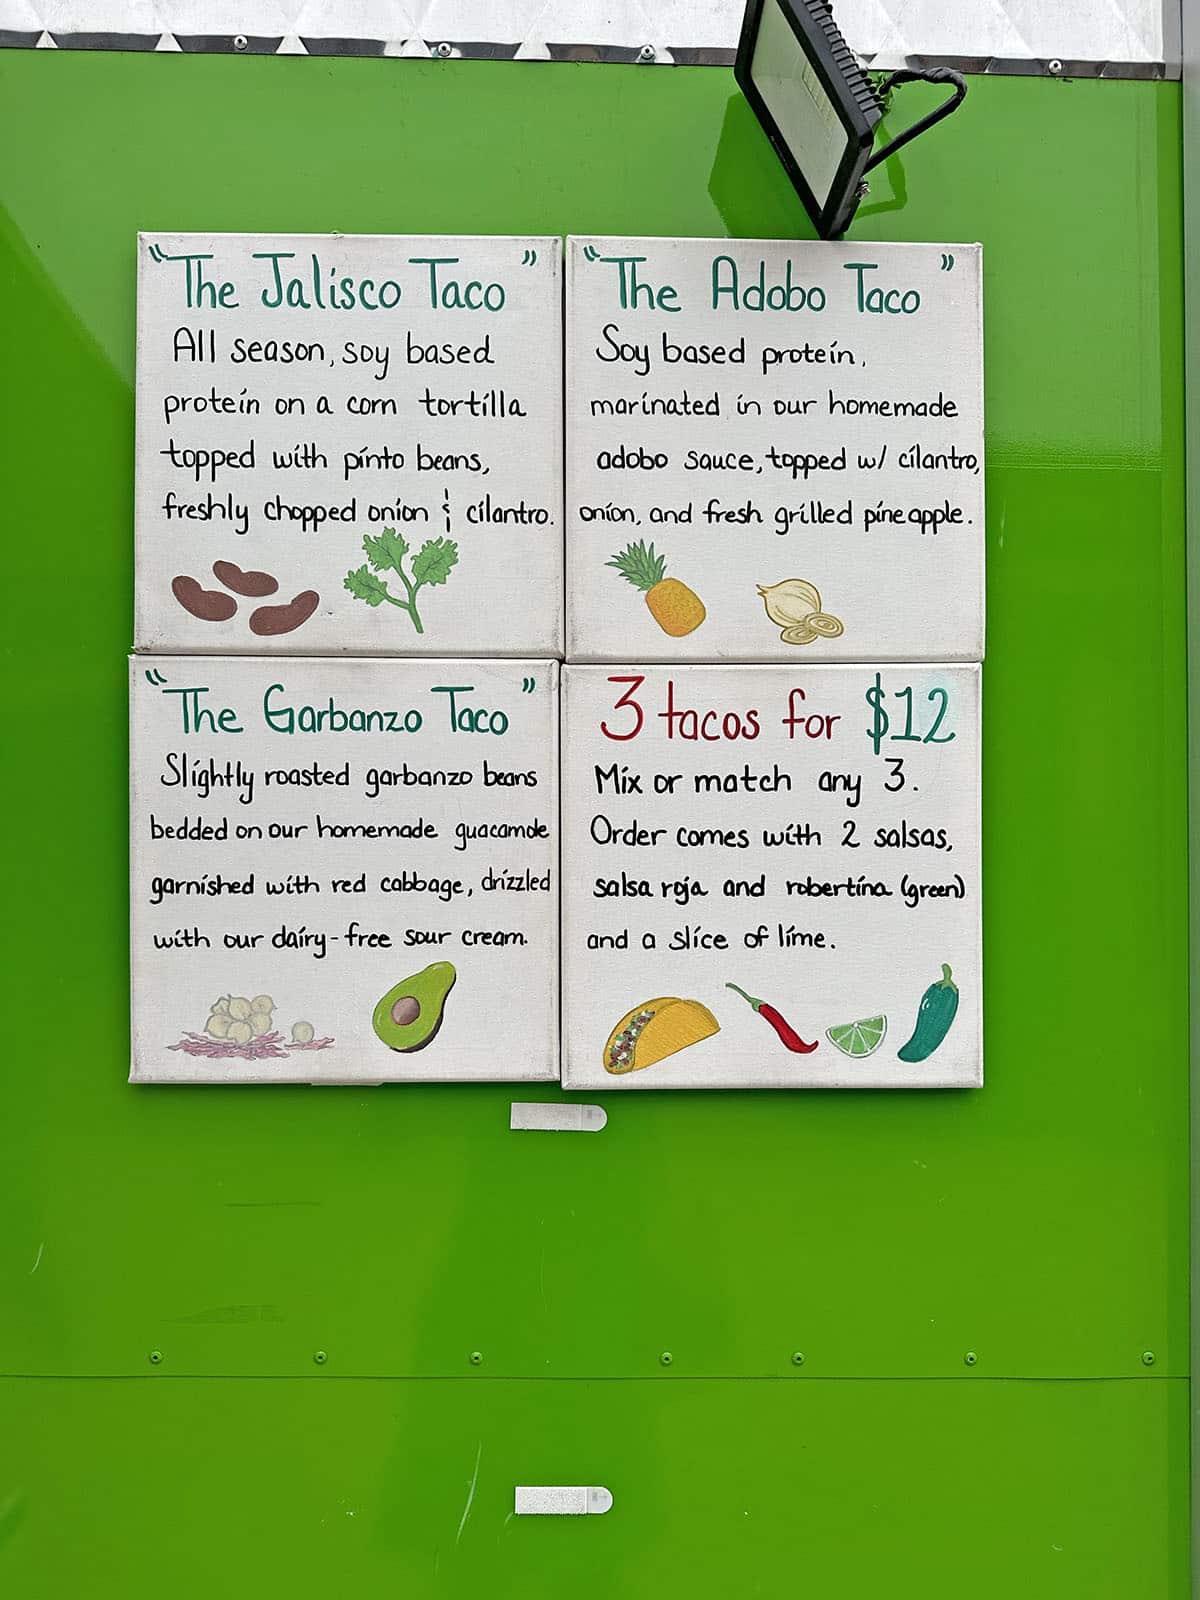 Taco menu on Cocina Verde taco truck.